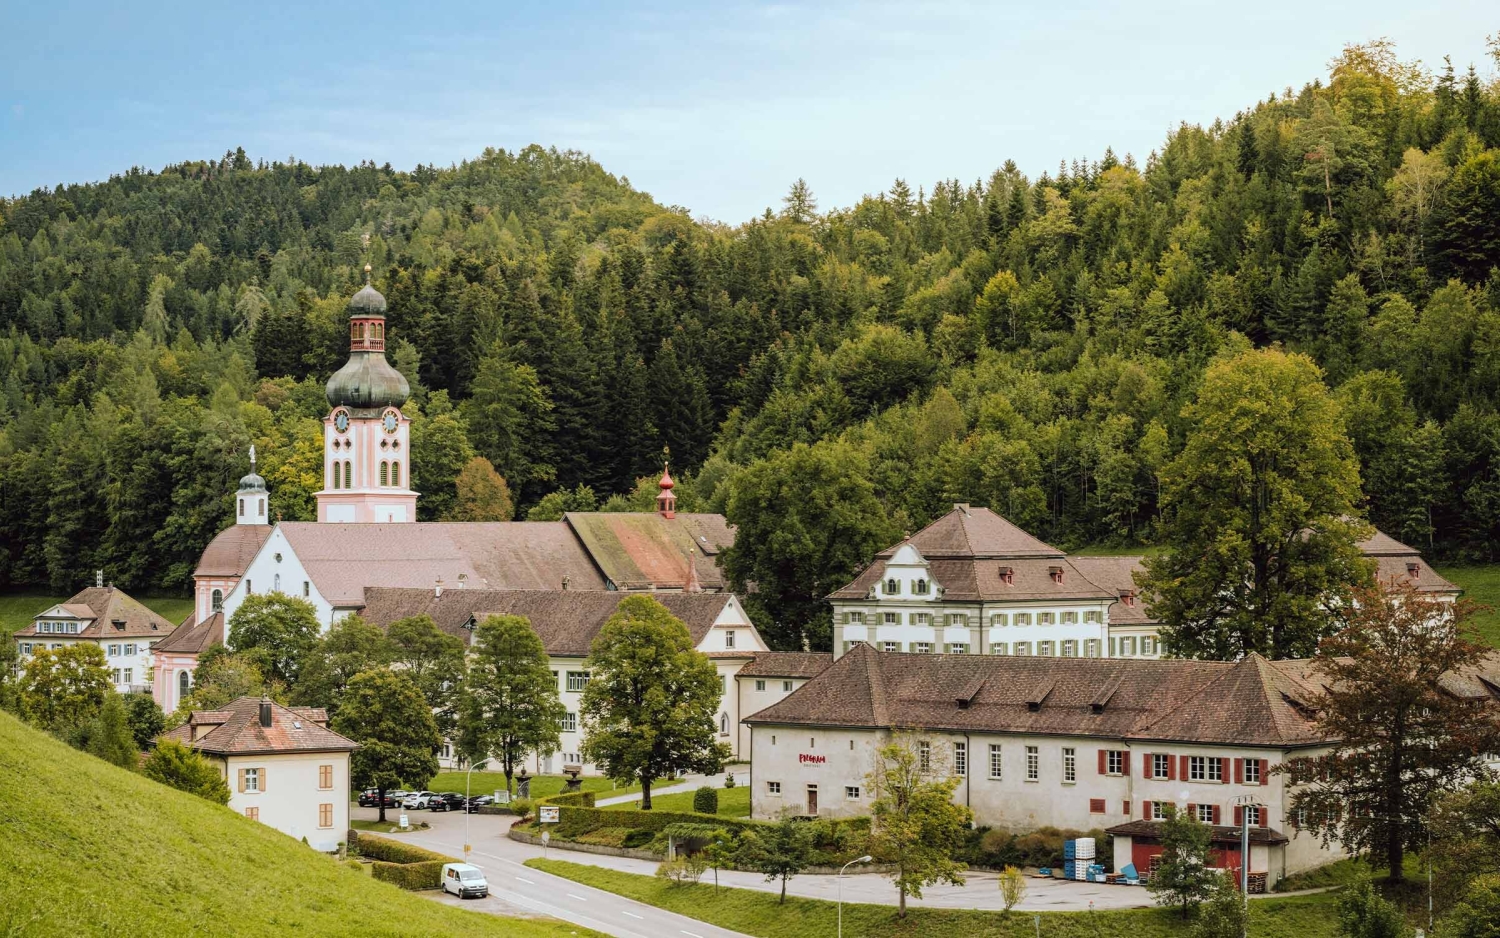 Region kloster fischingen swiss historic hotels 03